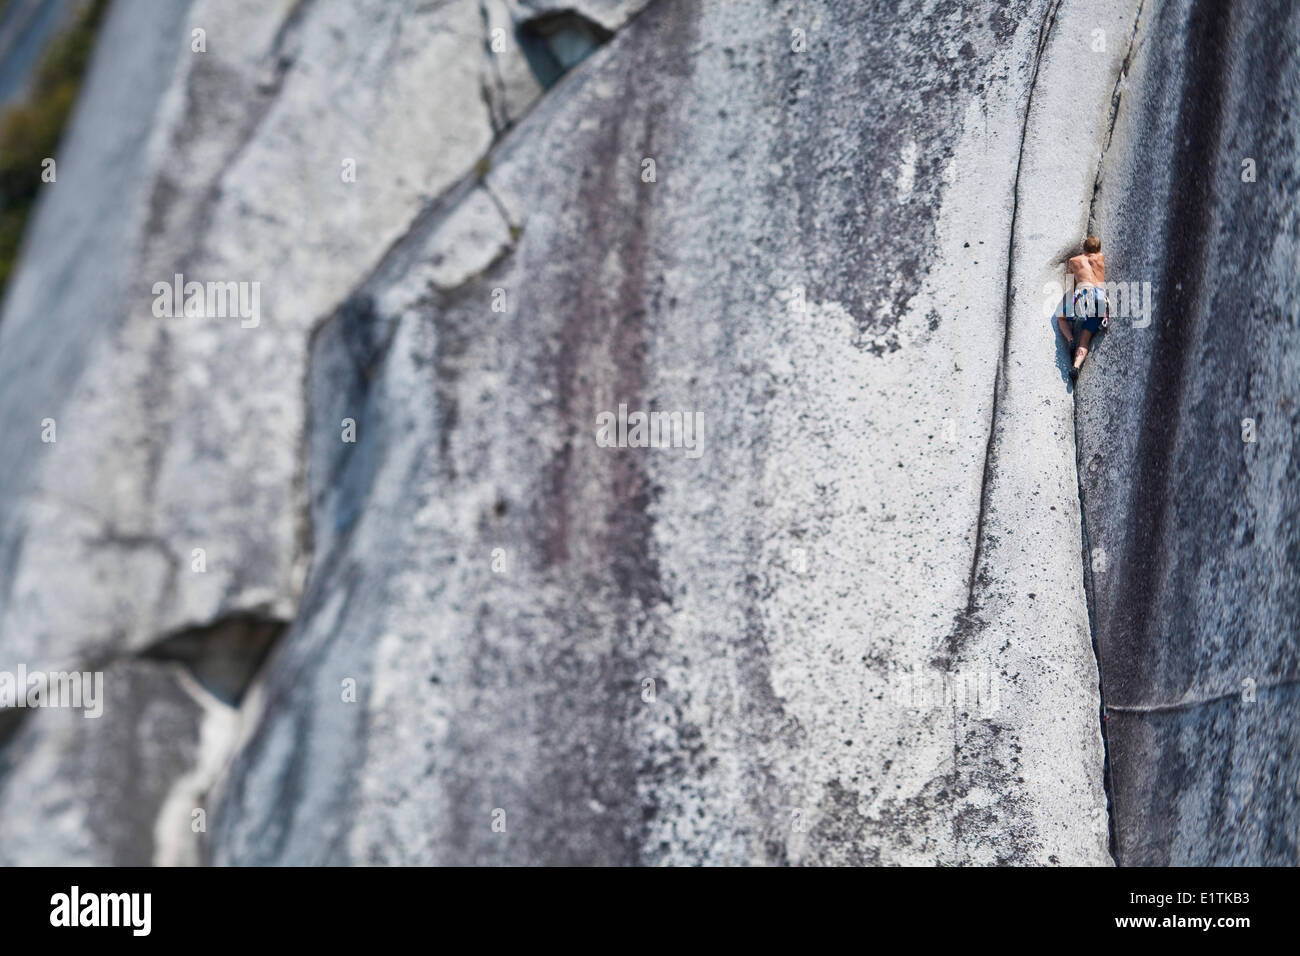 Un forte scalatore maschio della mezzaluna di arrampicata Crack 10d, Squamish, BC Foto Stock